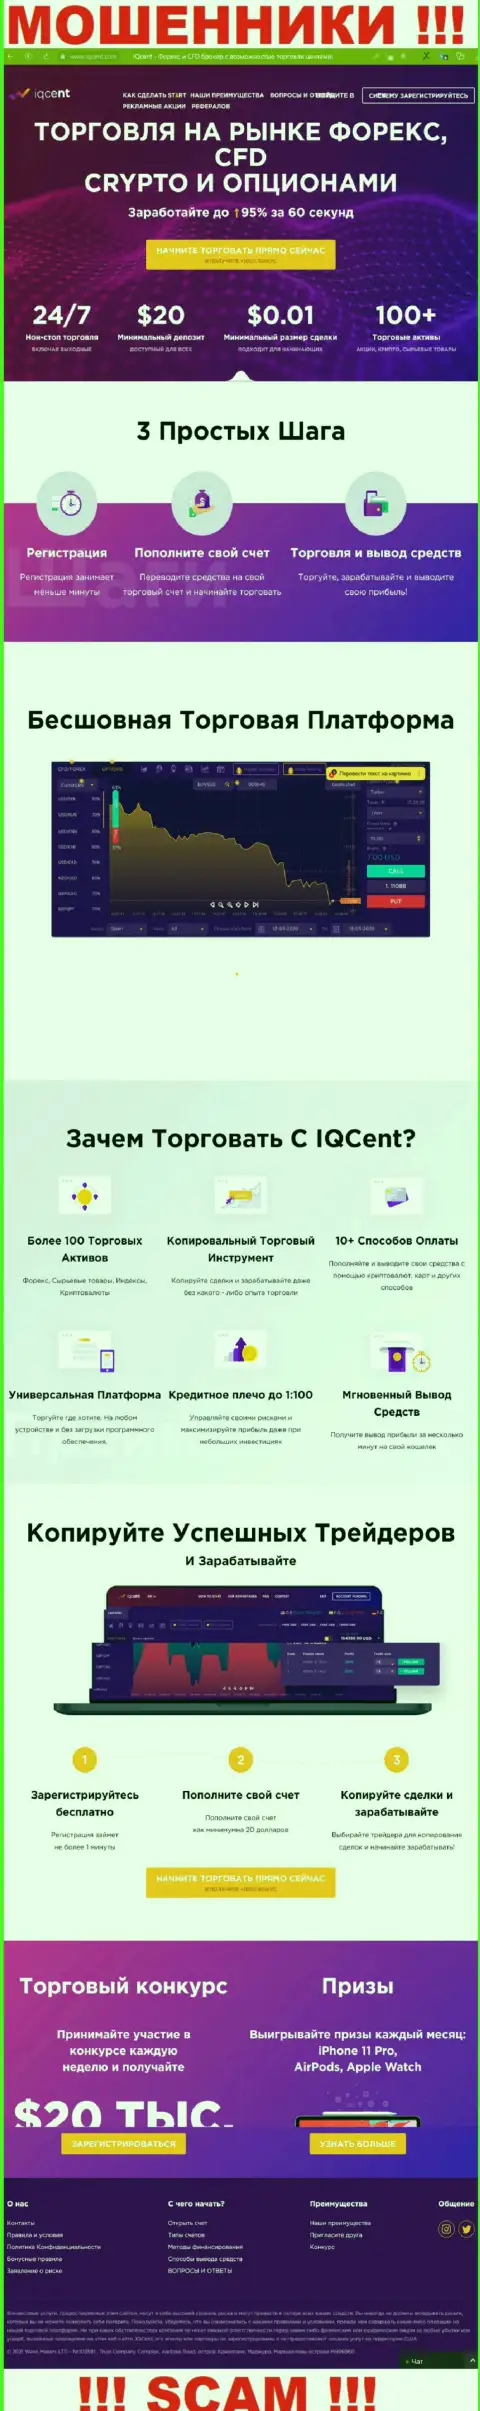 Официальный интернет-портал жуликов IQCent Com, переполненный сведениями для лохов